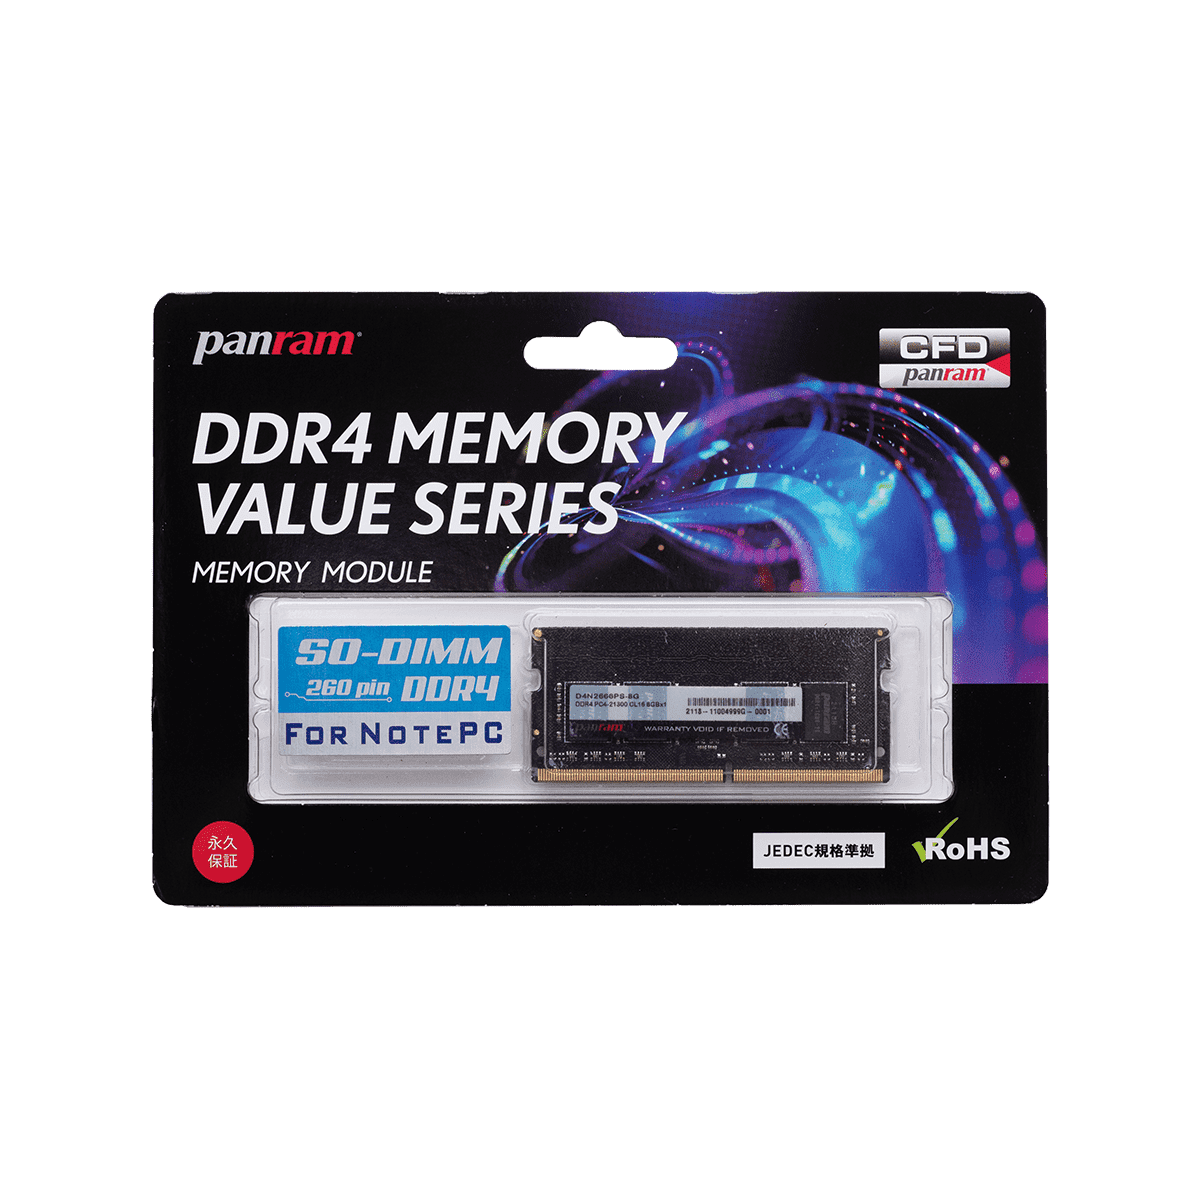 ノート用 DDR4-2666 | PCパーツメーカーの総合サプライヤーCFD販売の法人専用卸売サイト CFD-BIZ.com